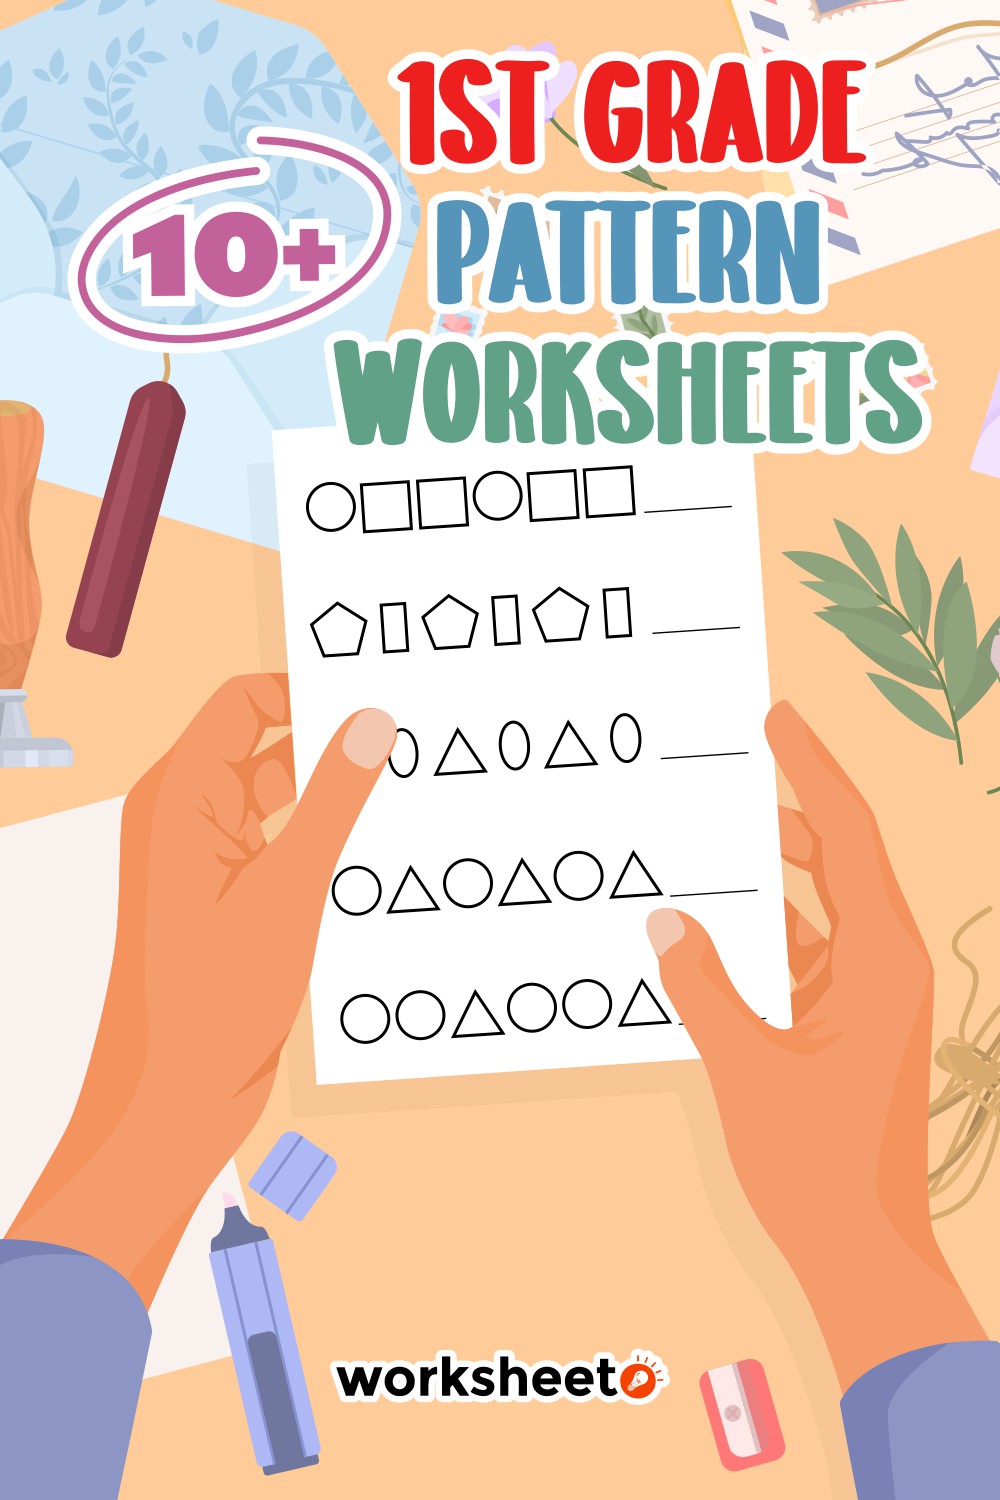 14 Images of 1st Grade Pattern Worksheets